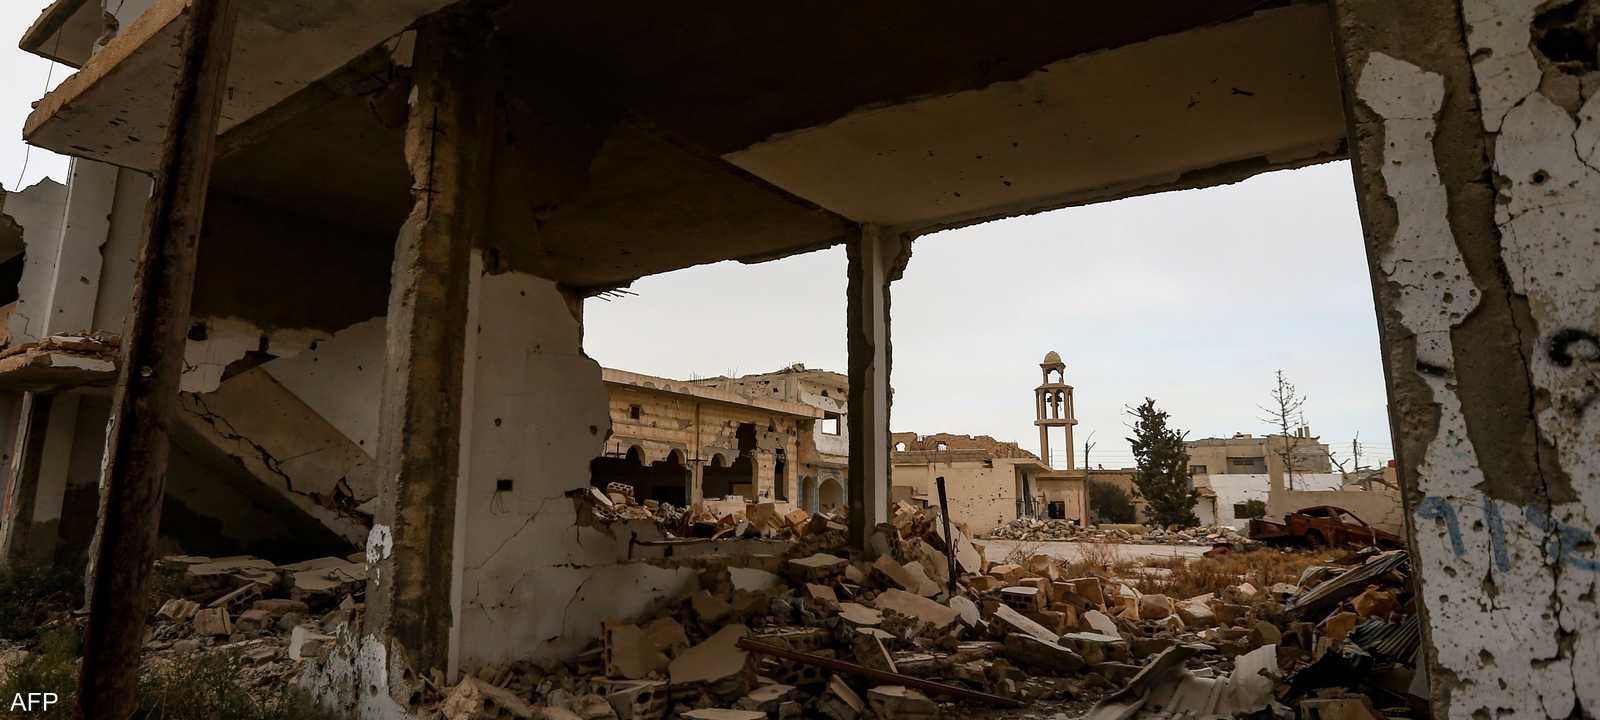 الحرب دمرت البنية التحتية في سوريا